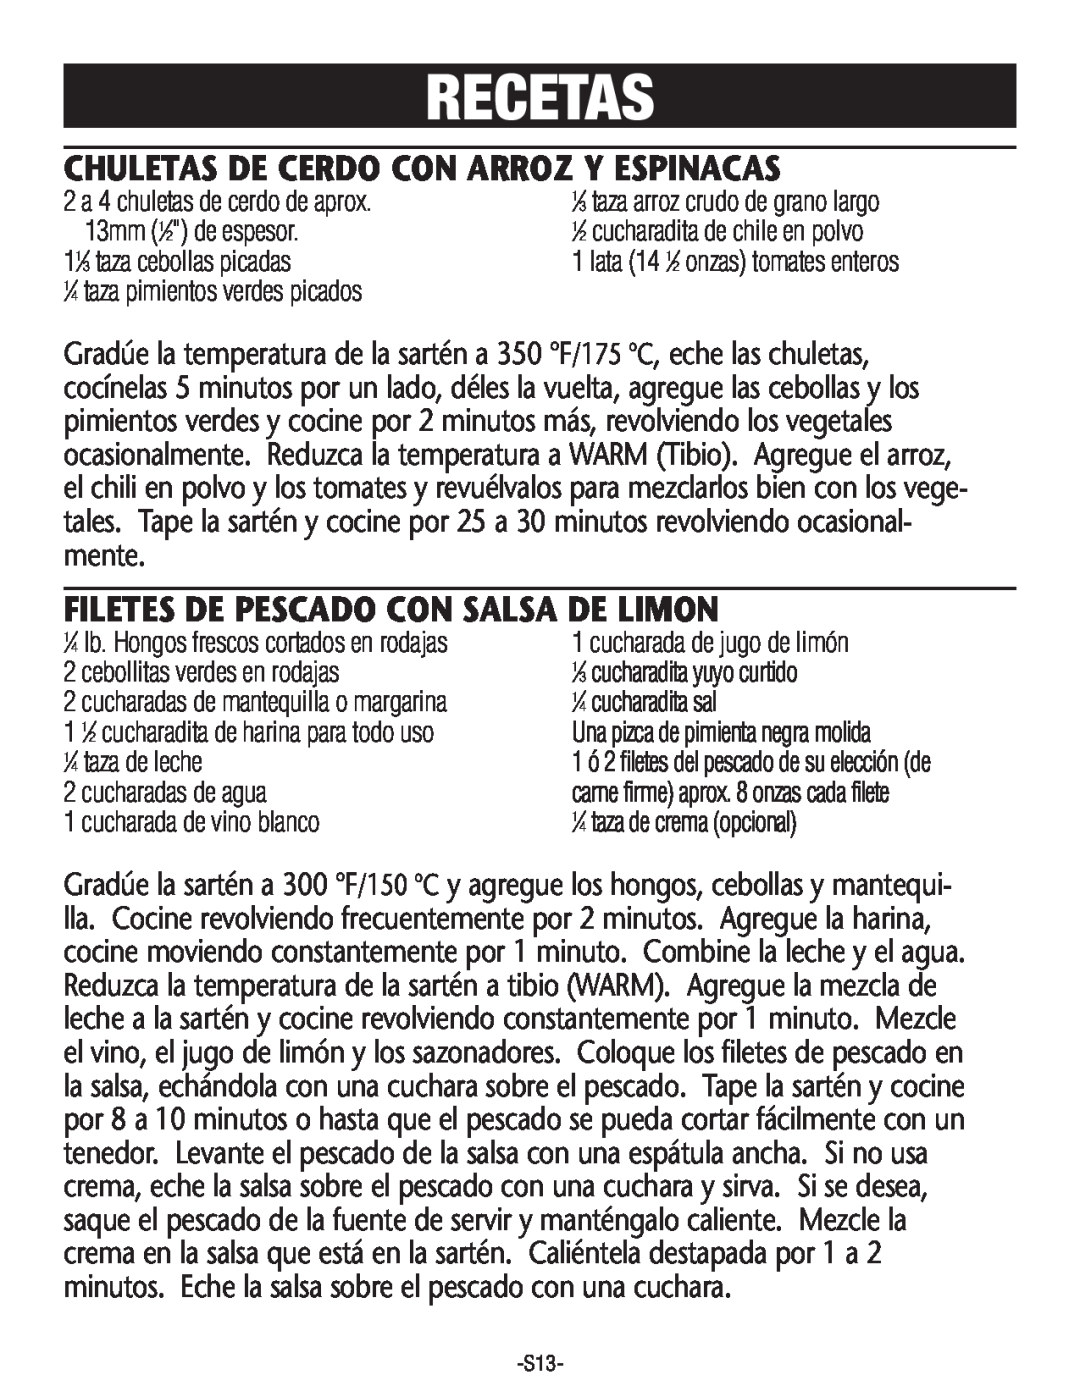 Rival S160 manual Recetas, Chuletas De Cerdo Con Arroz Y Espinacas, Filetes De Pescado Con Salsa De Limon 